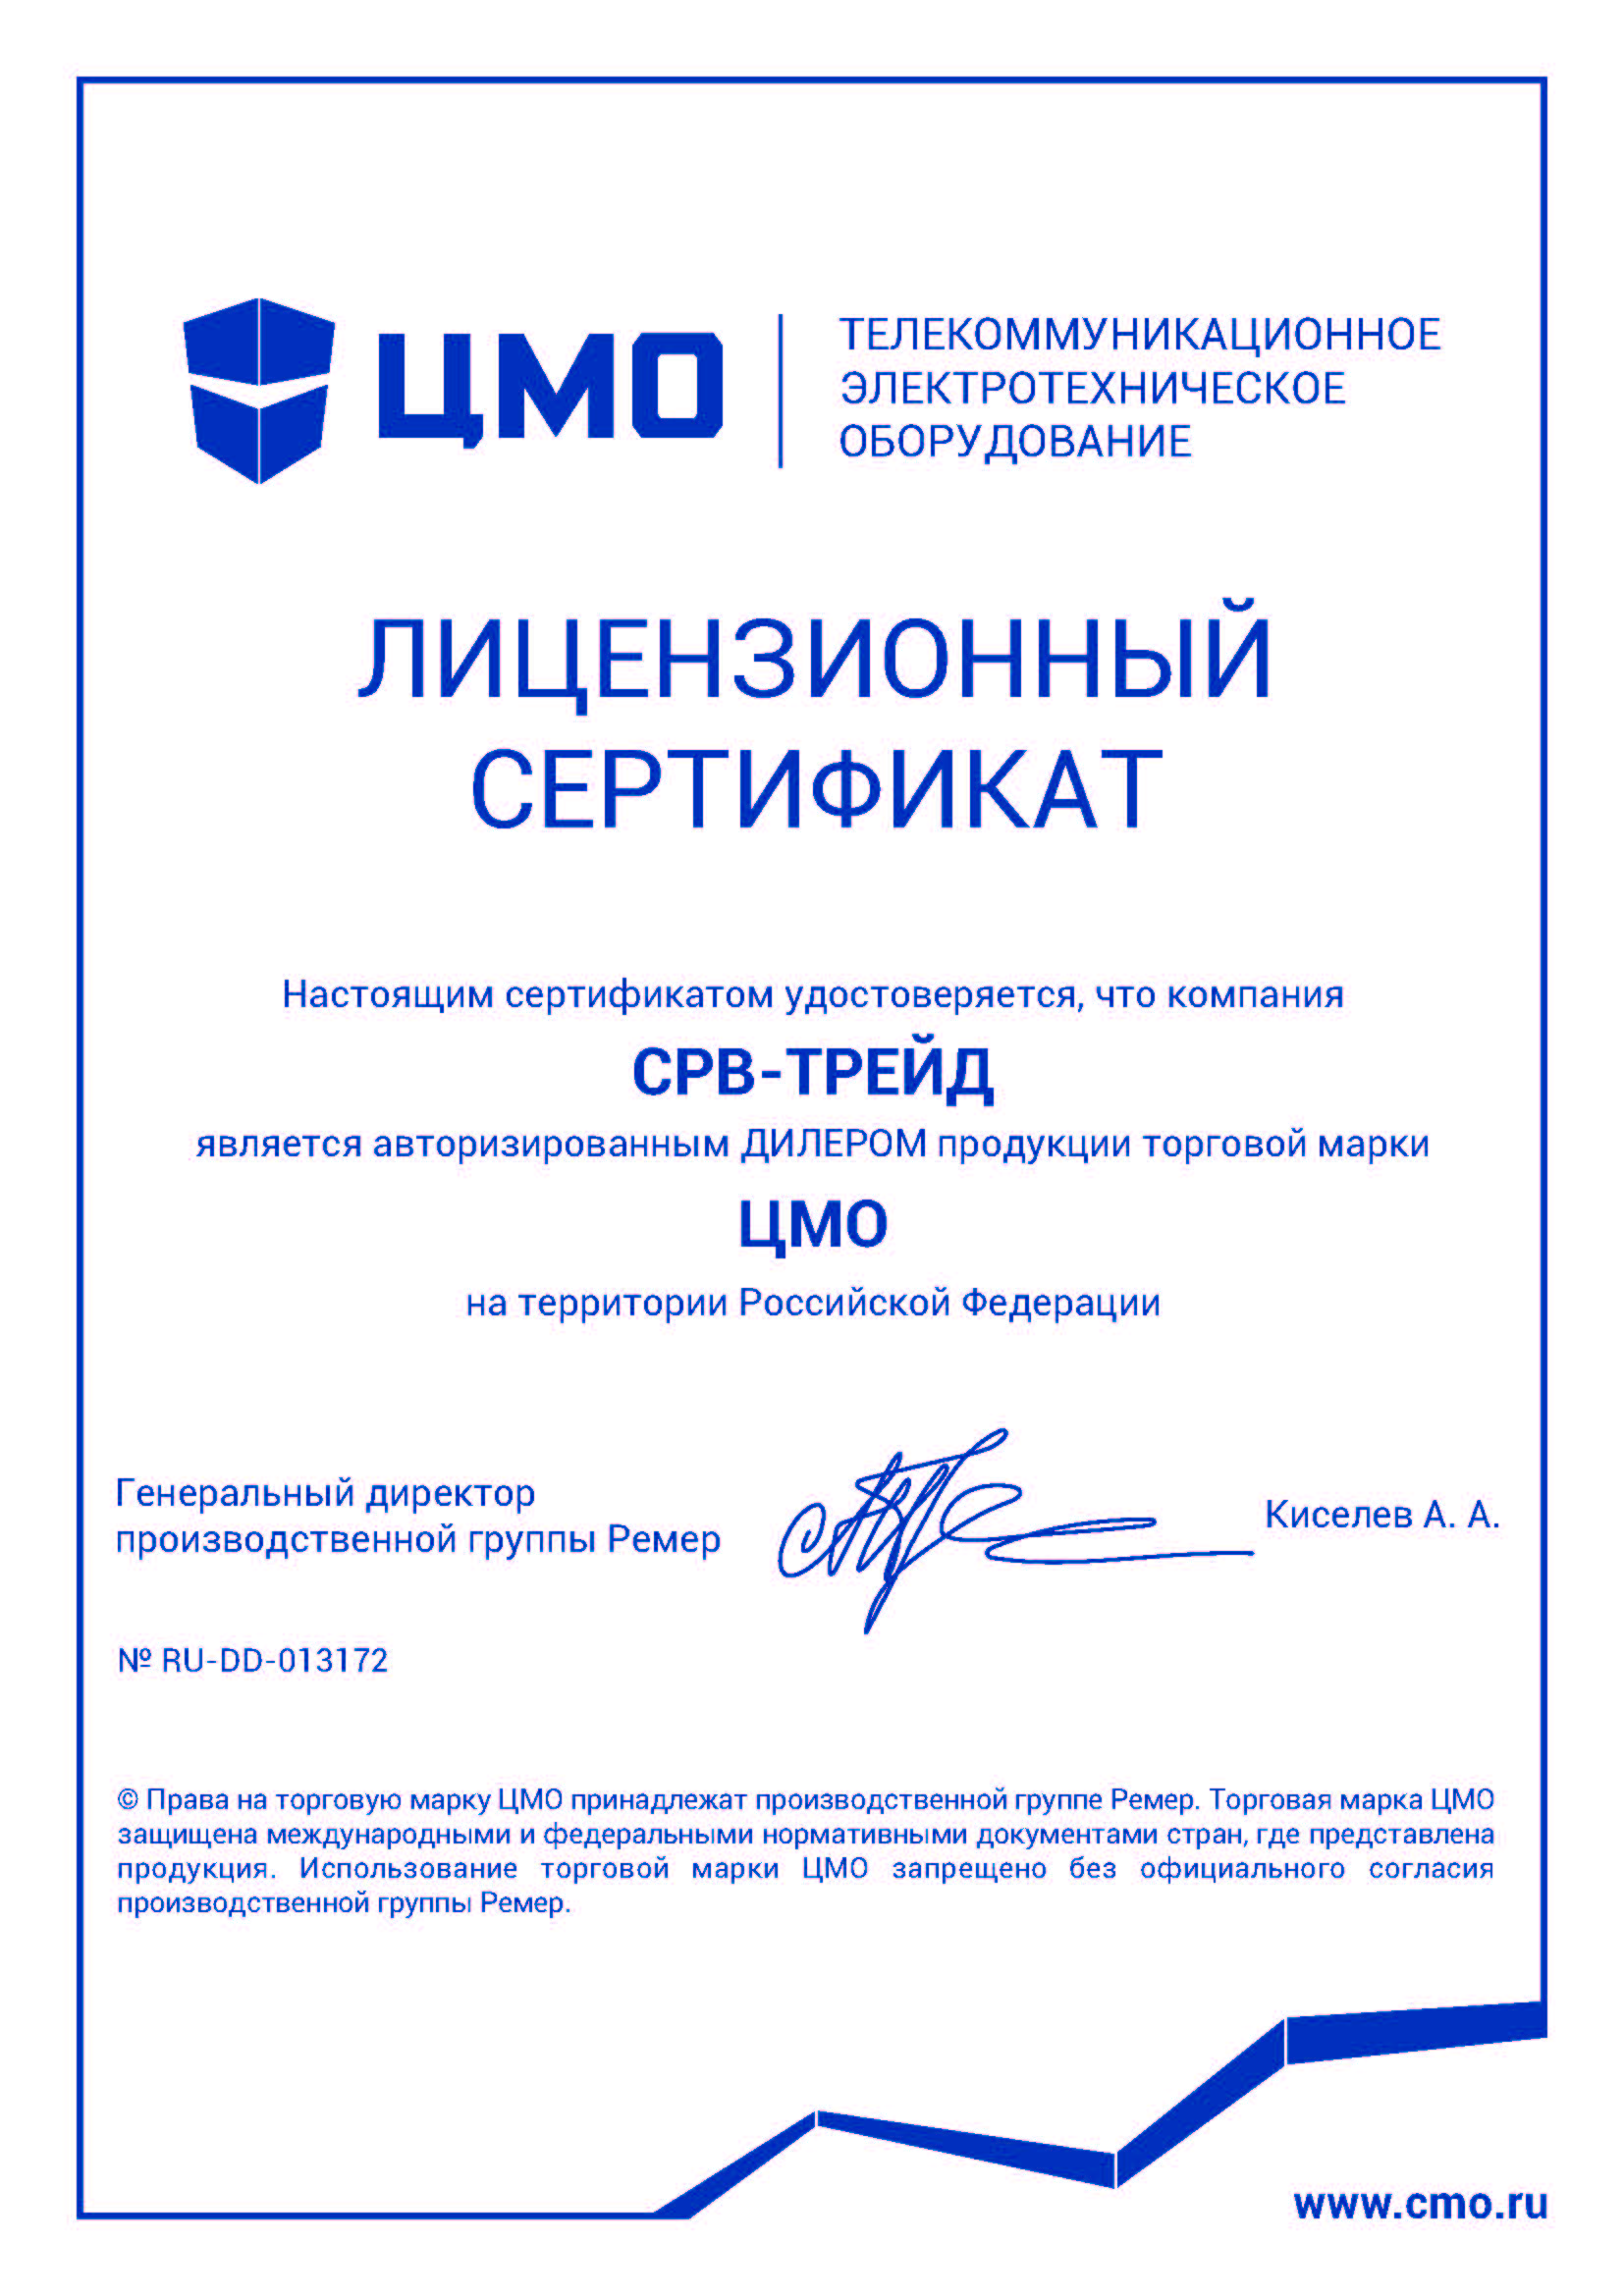 Сертификат дилера торговой марки ЦМО